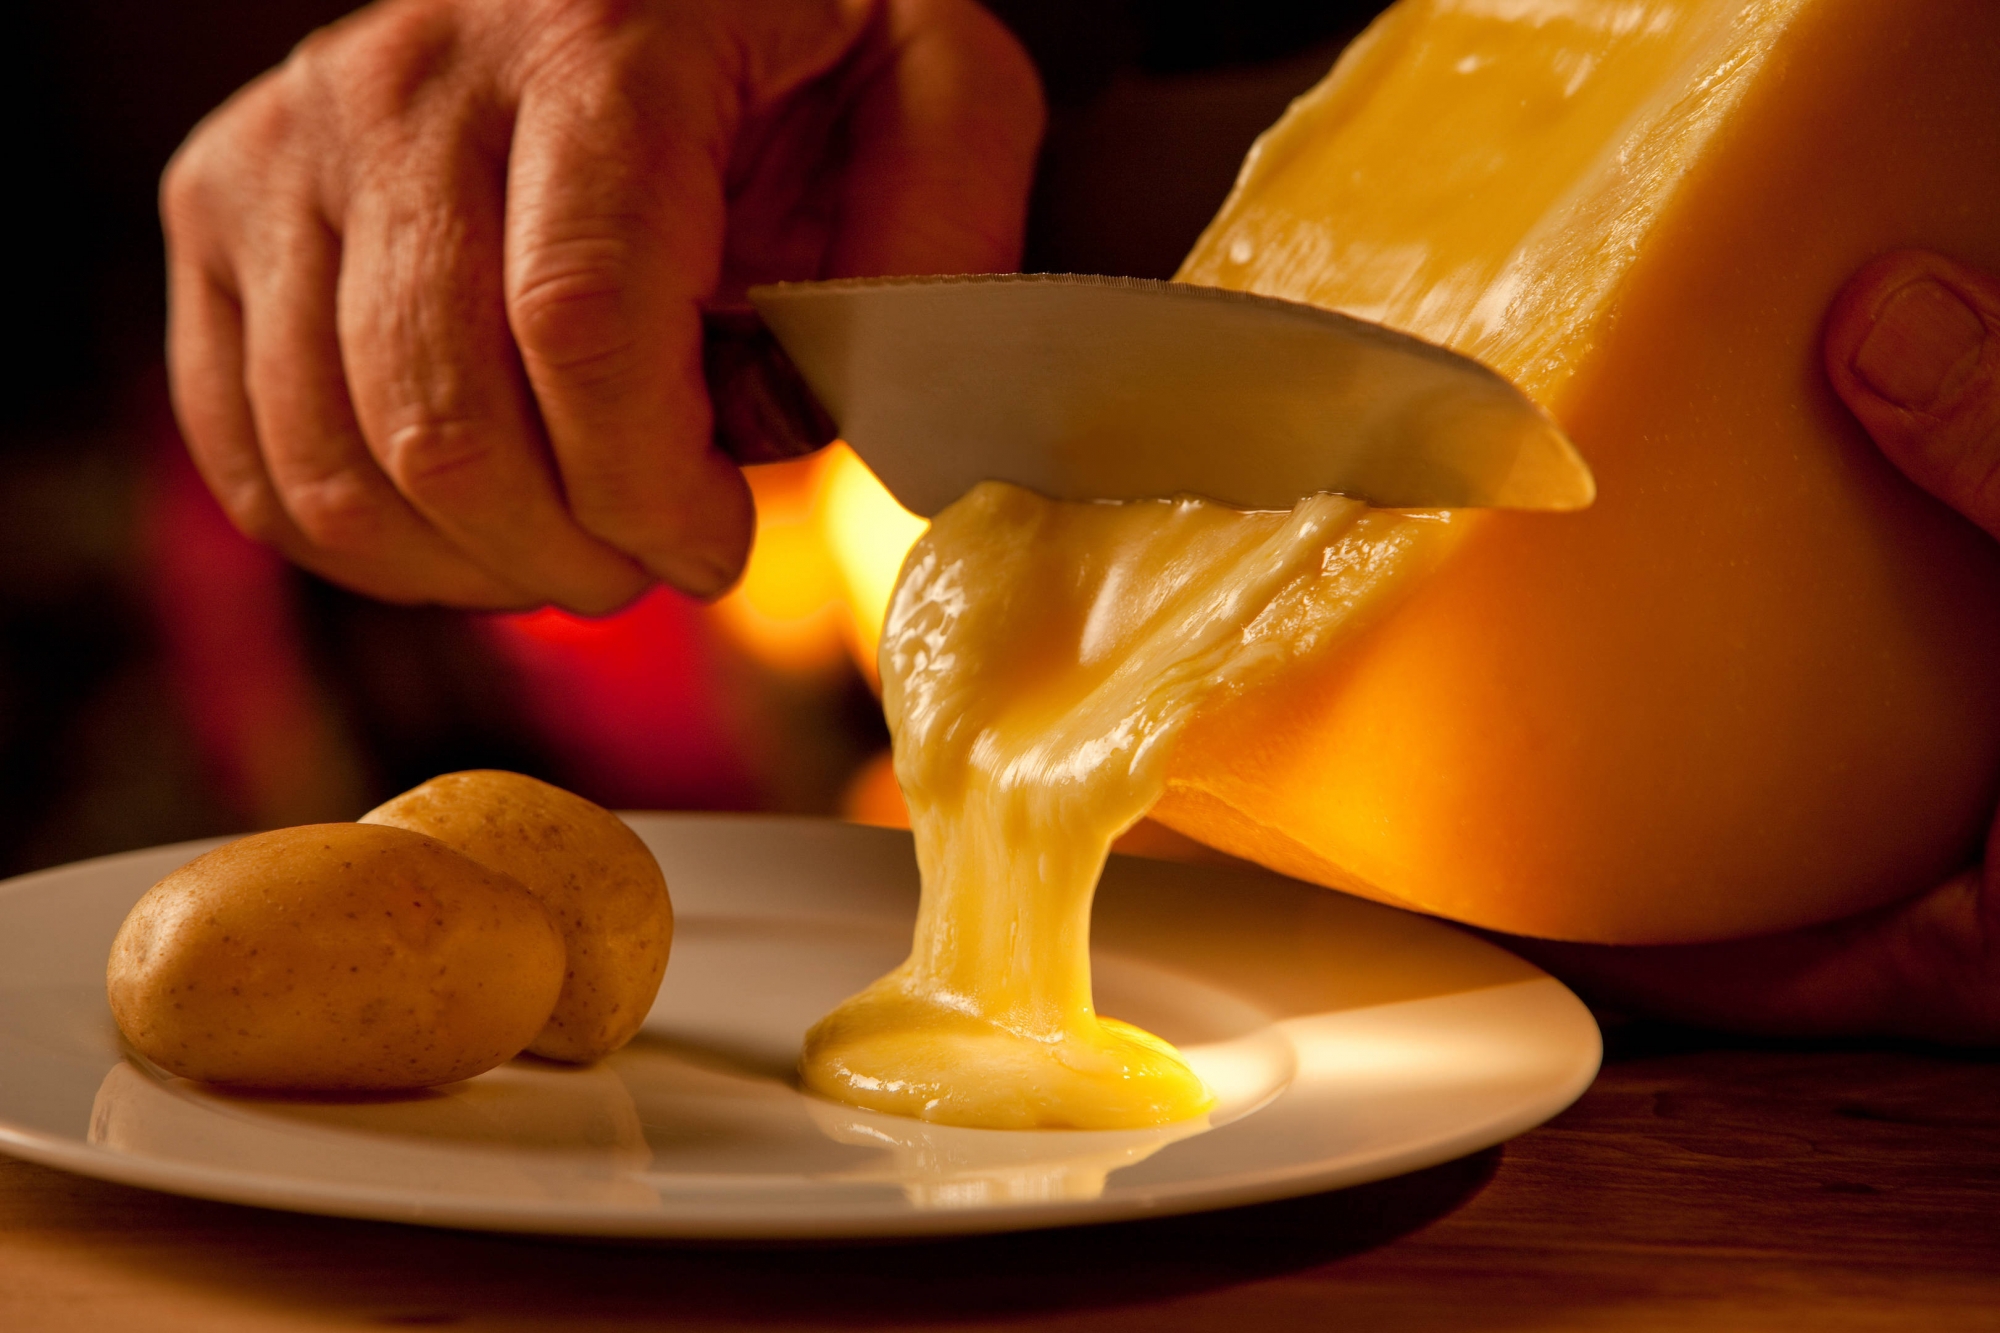 99,24% des fromages à raclette valaisans passés sous la loupe de la commission de la taxation en 2018 ont obtenu 18 points ou plus sur 20. Ils sont donc considérés comme étant de première qualité.